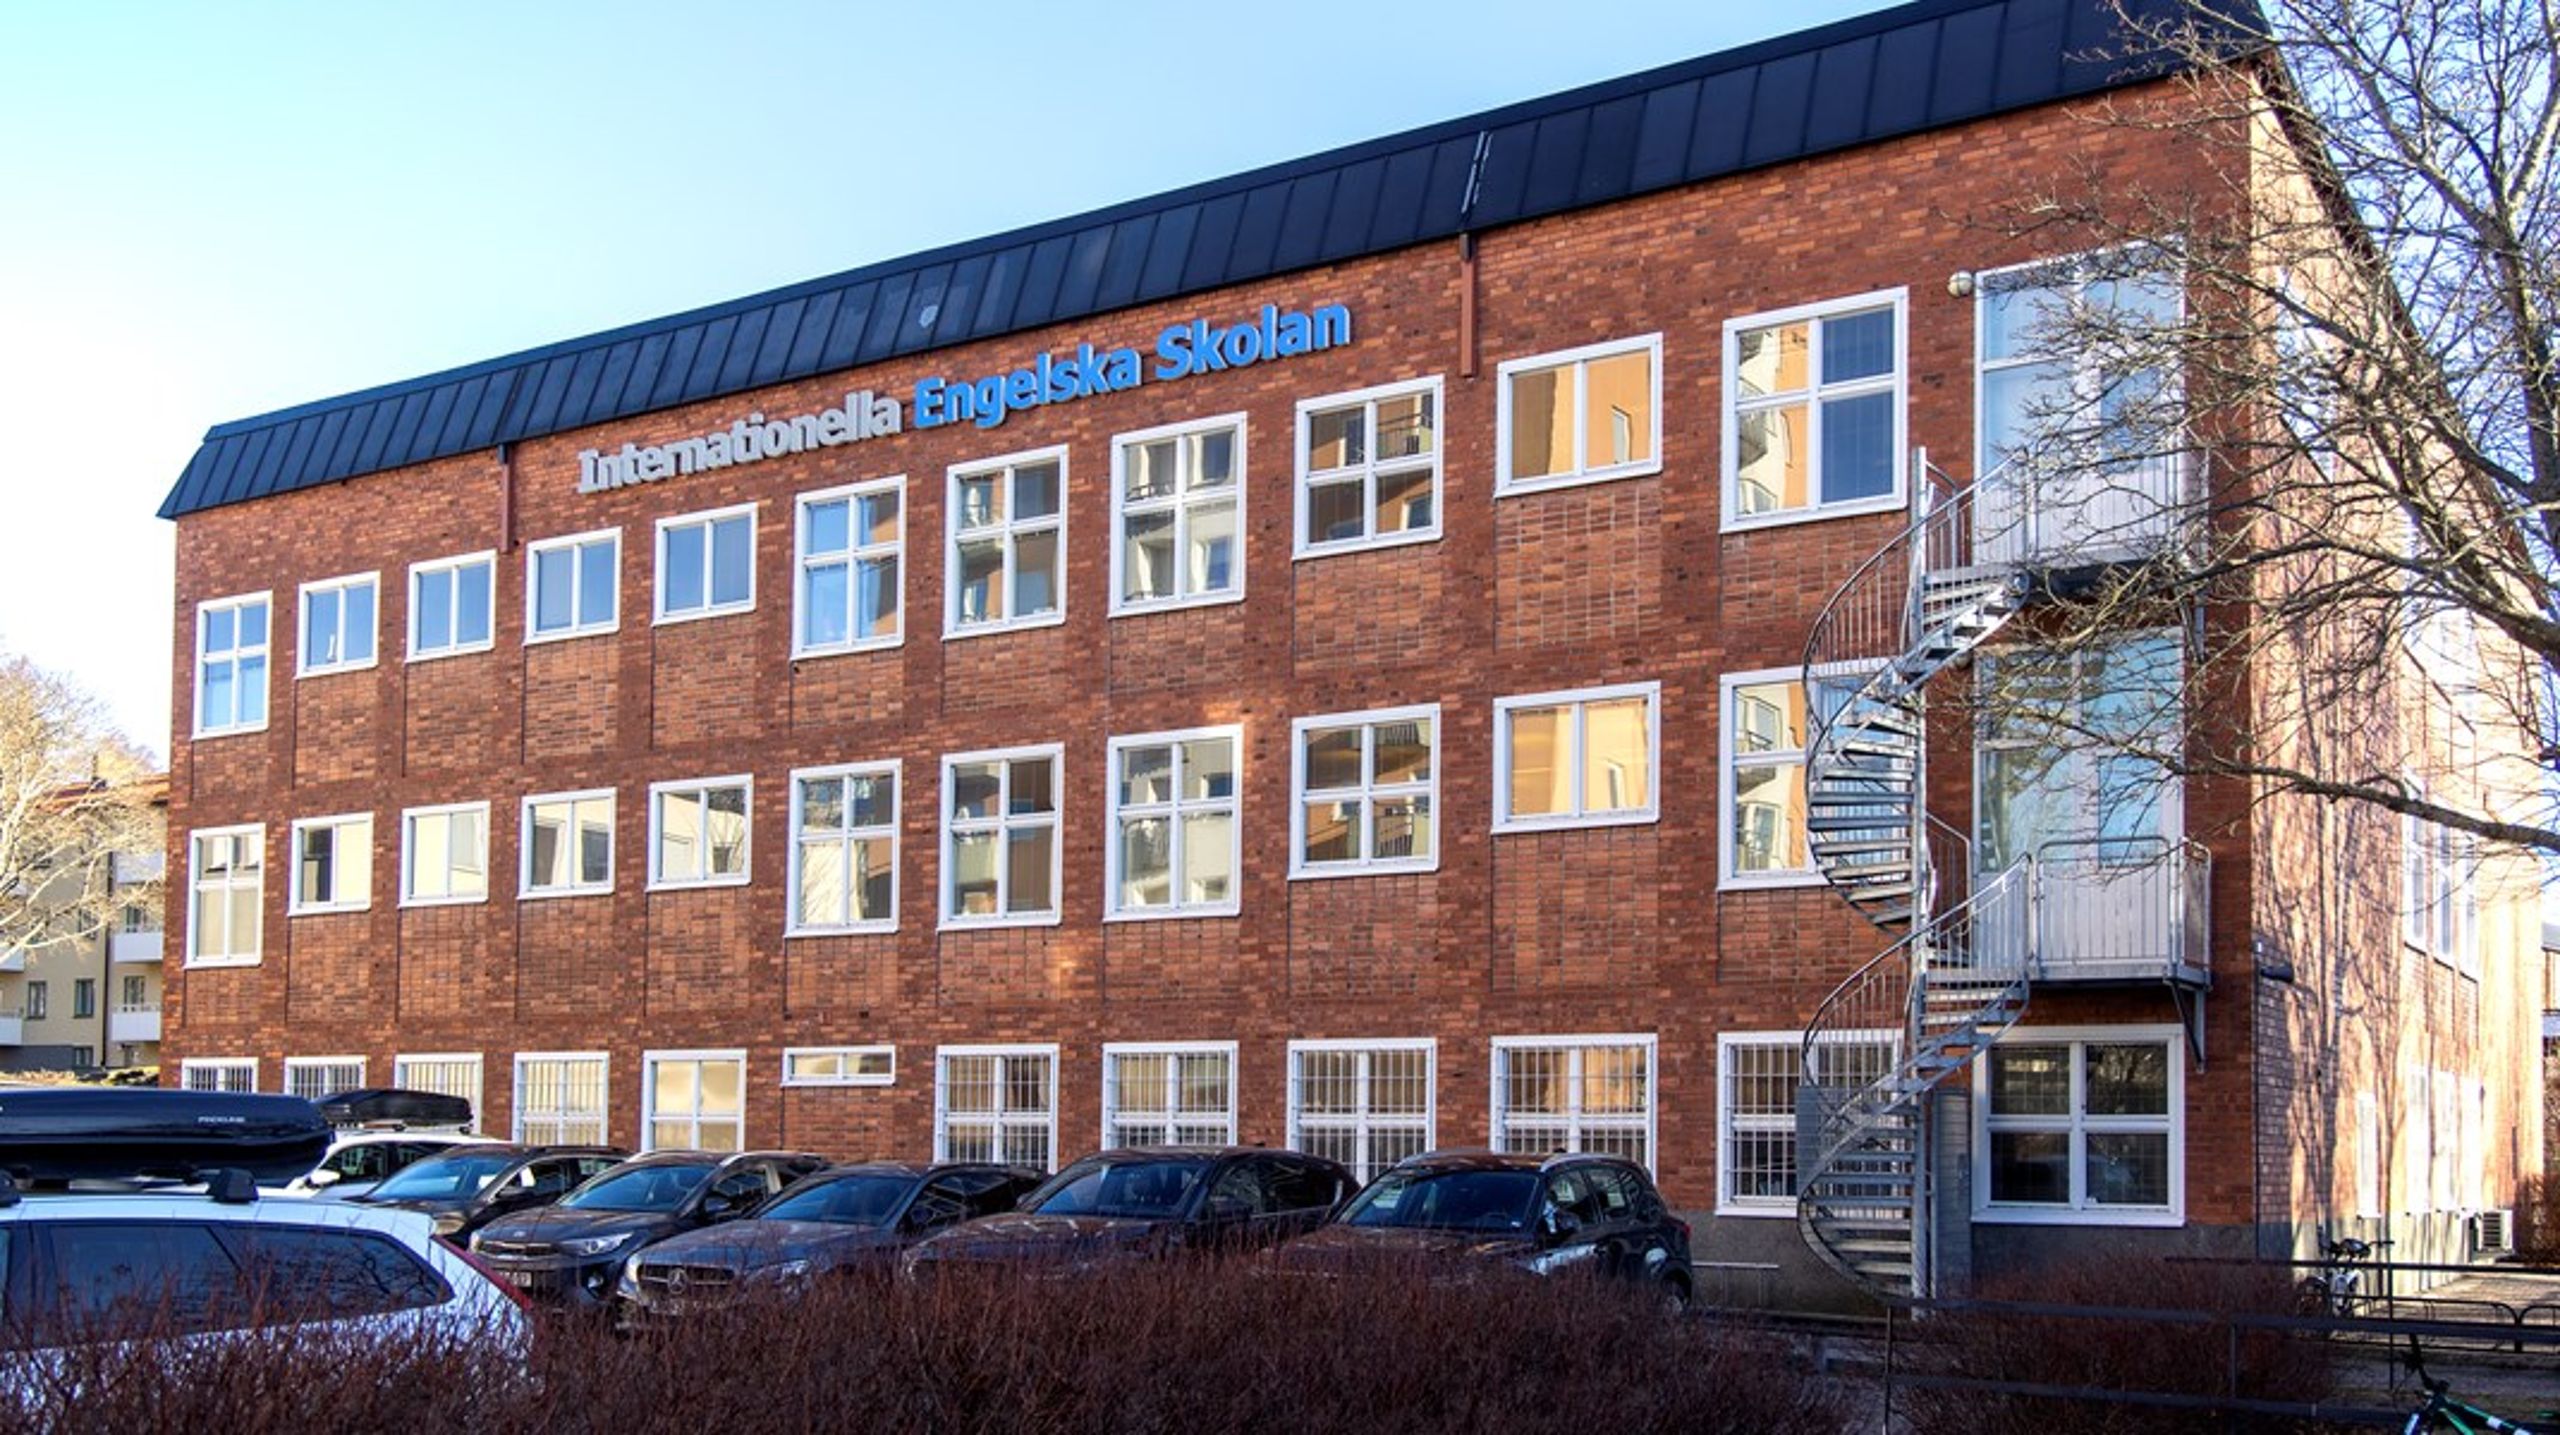 I Sundsvalls kommun är snittet i de kommunala skolorna 56 procent föräldrar med eftergymnasial utbildning medan Internationella engelska skolan har 81 procent föräldrar med eftergymnasial utbildning, skriver debattören.